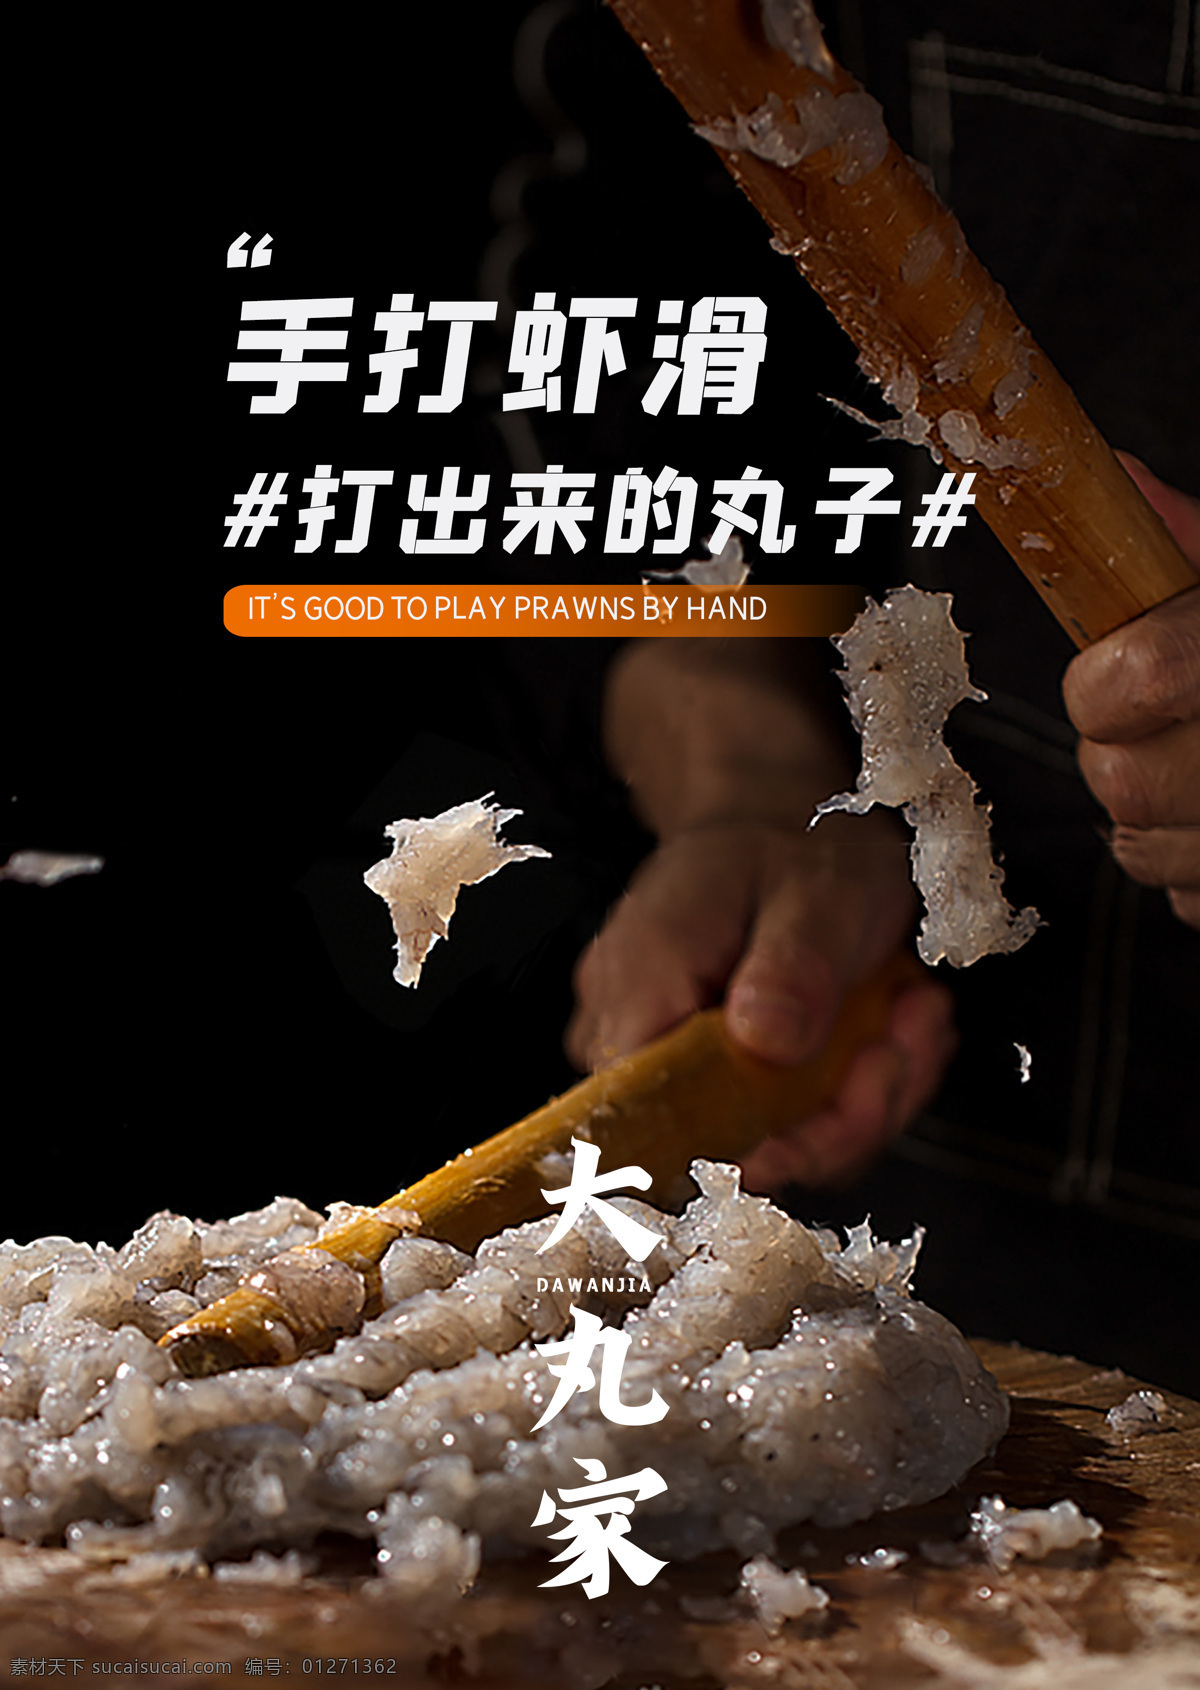 虾滑图片 火潮 虾滑 火锅 美食 展架 广告 旋转火锅 海报